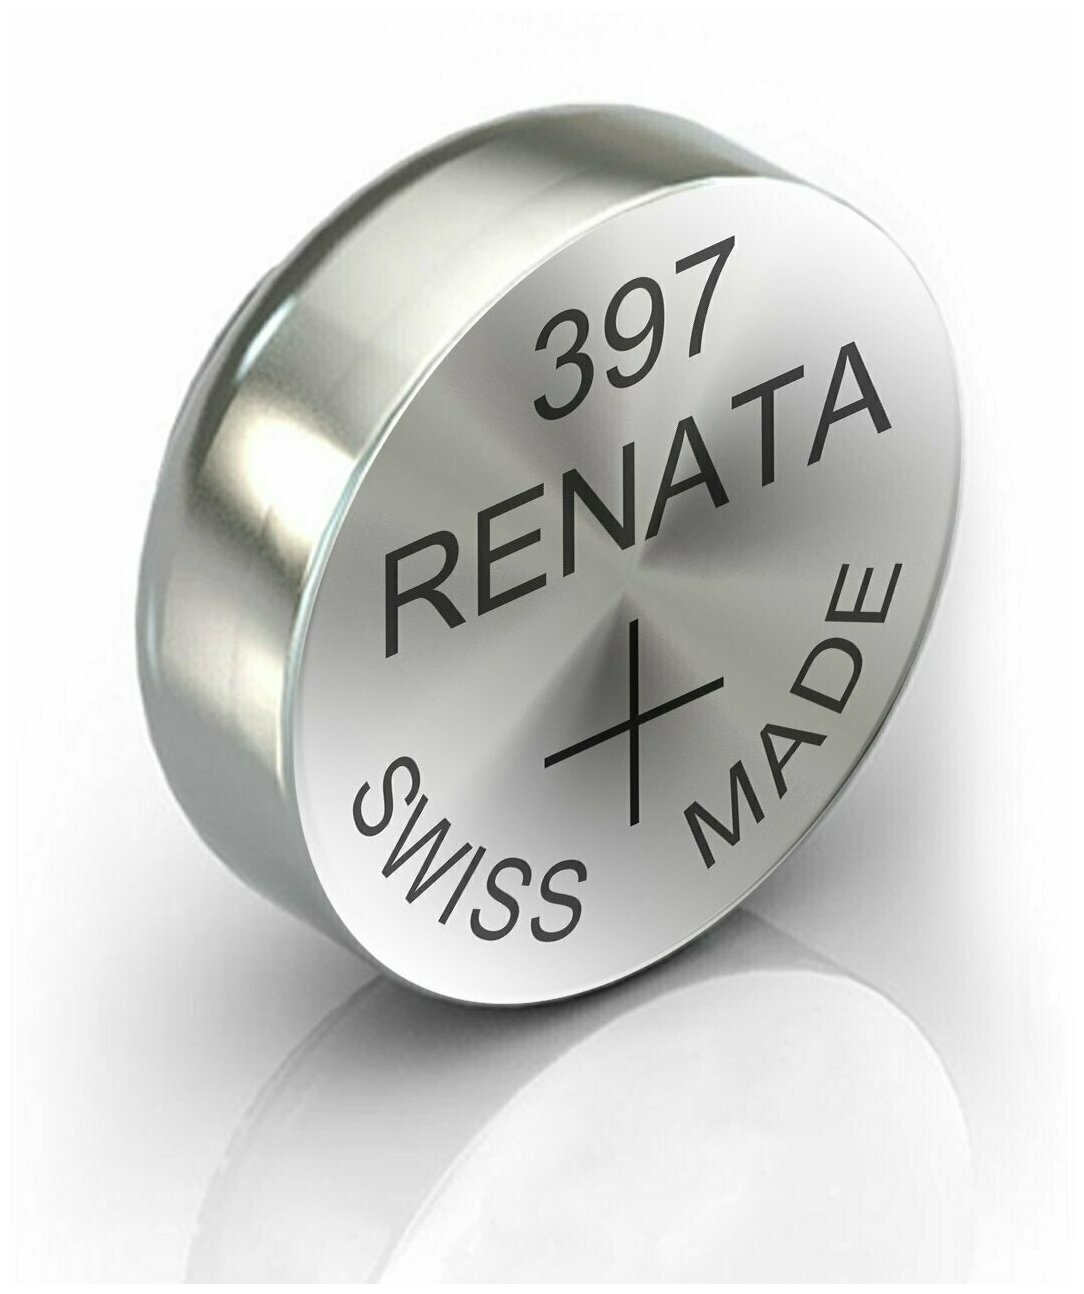 Батарейка RENATA R 397, SR 726 SW Швейцария: 1 шт.